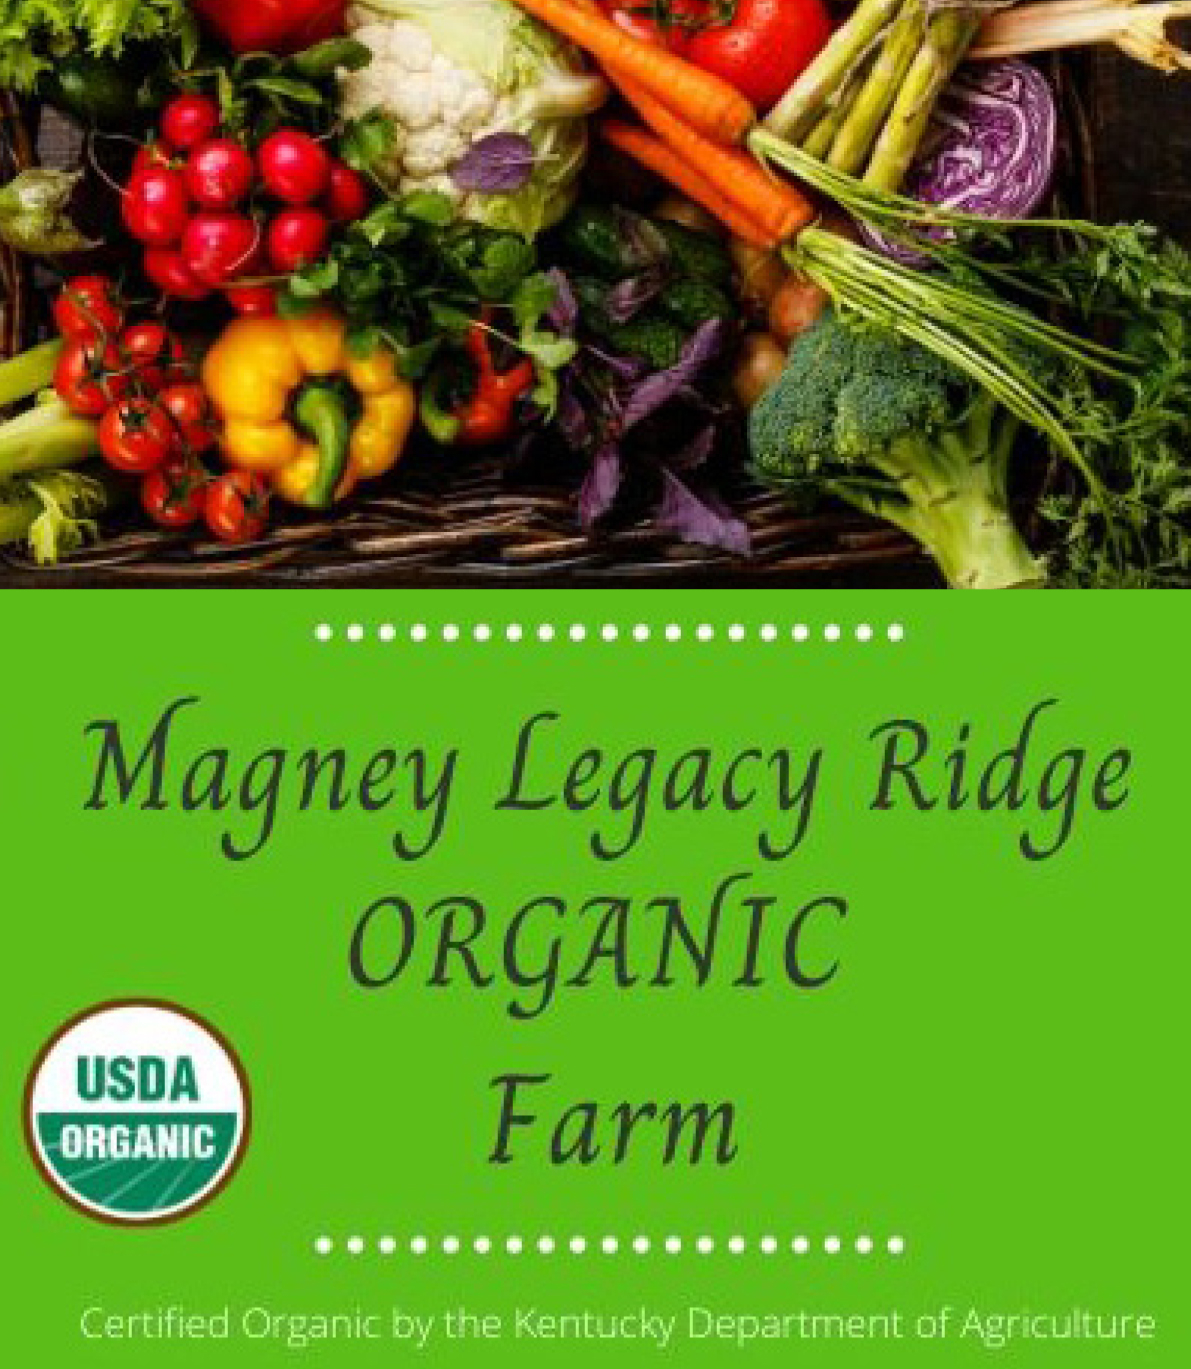 Magney Legacy Ridge Farm